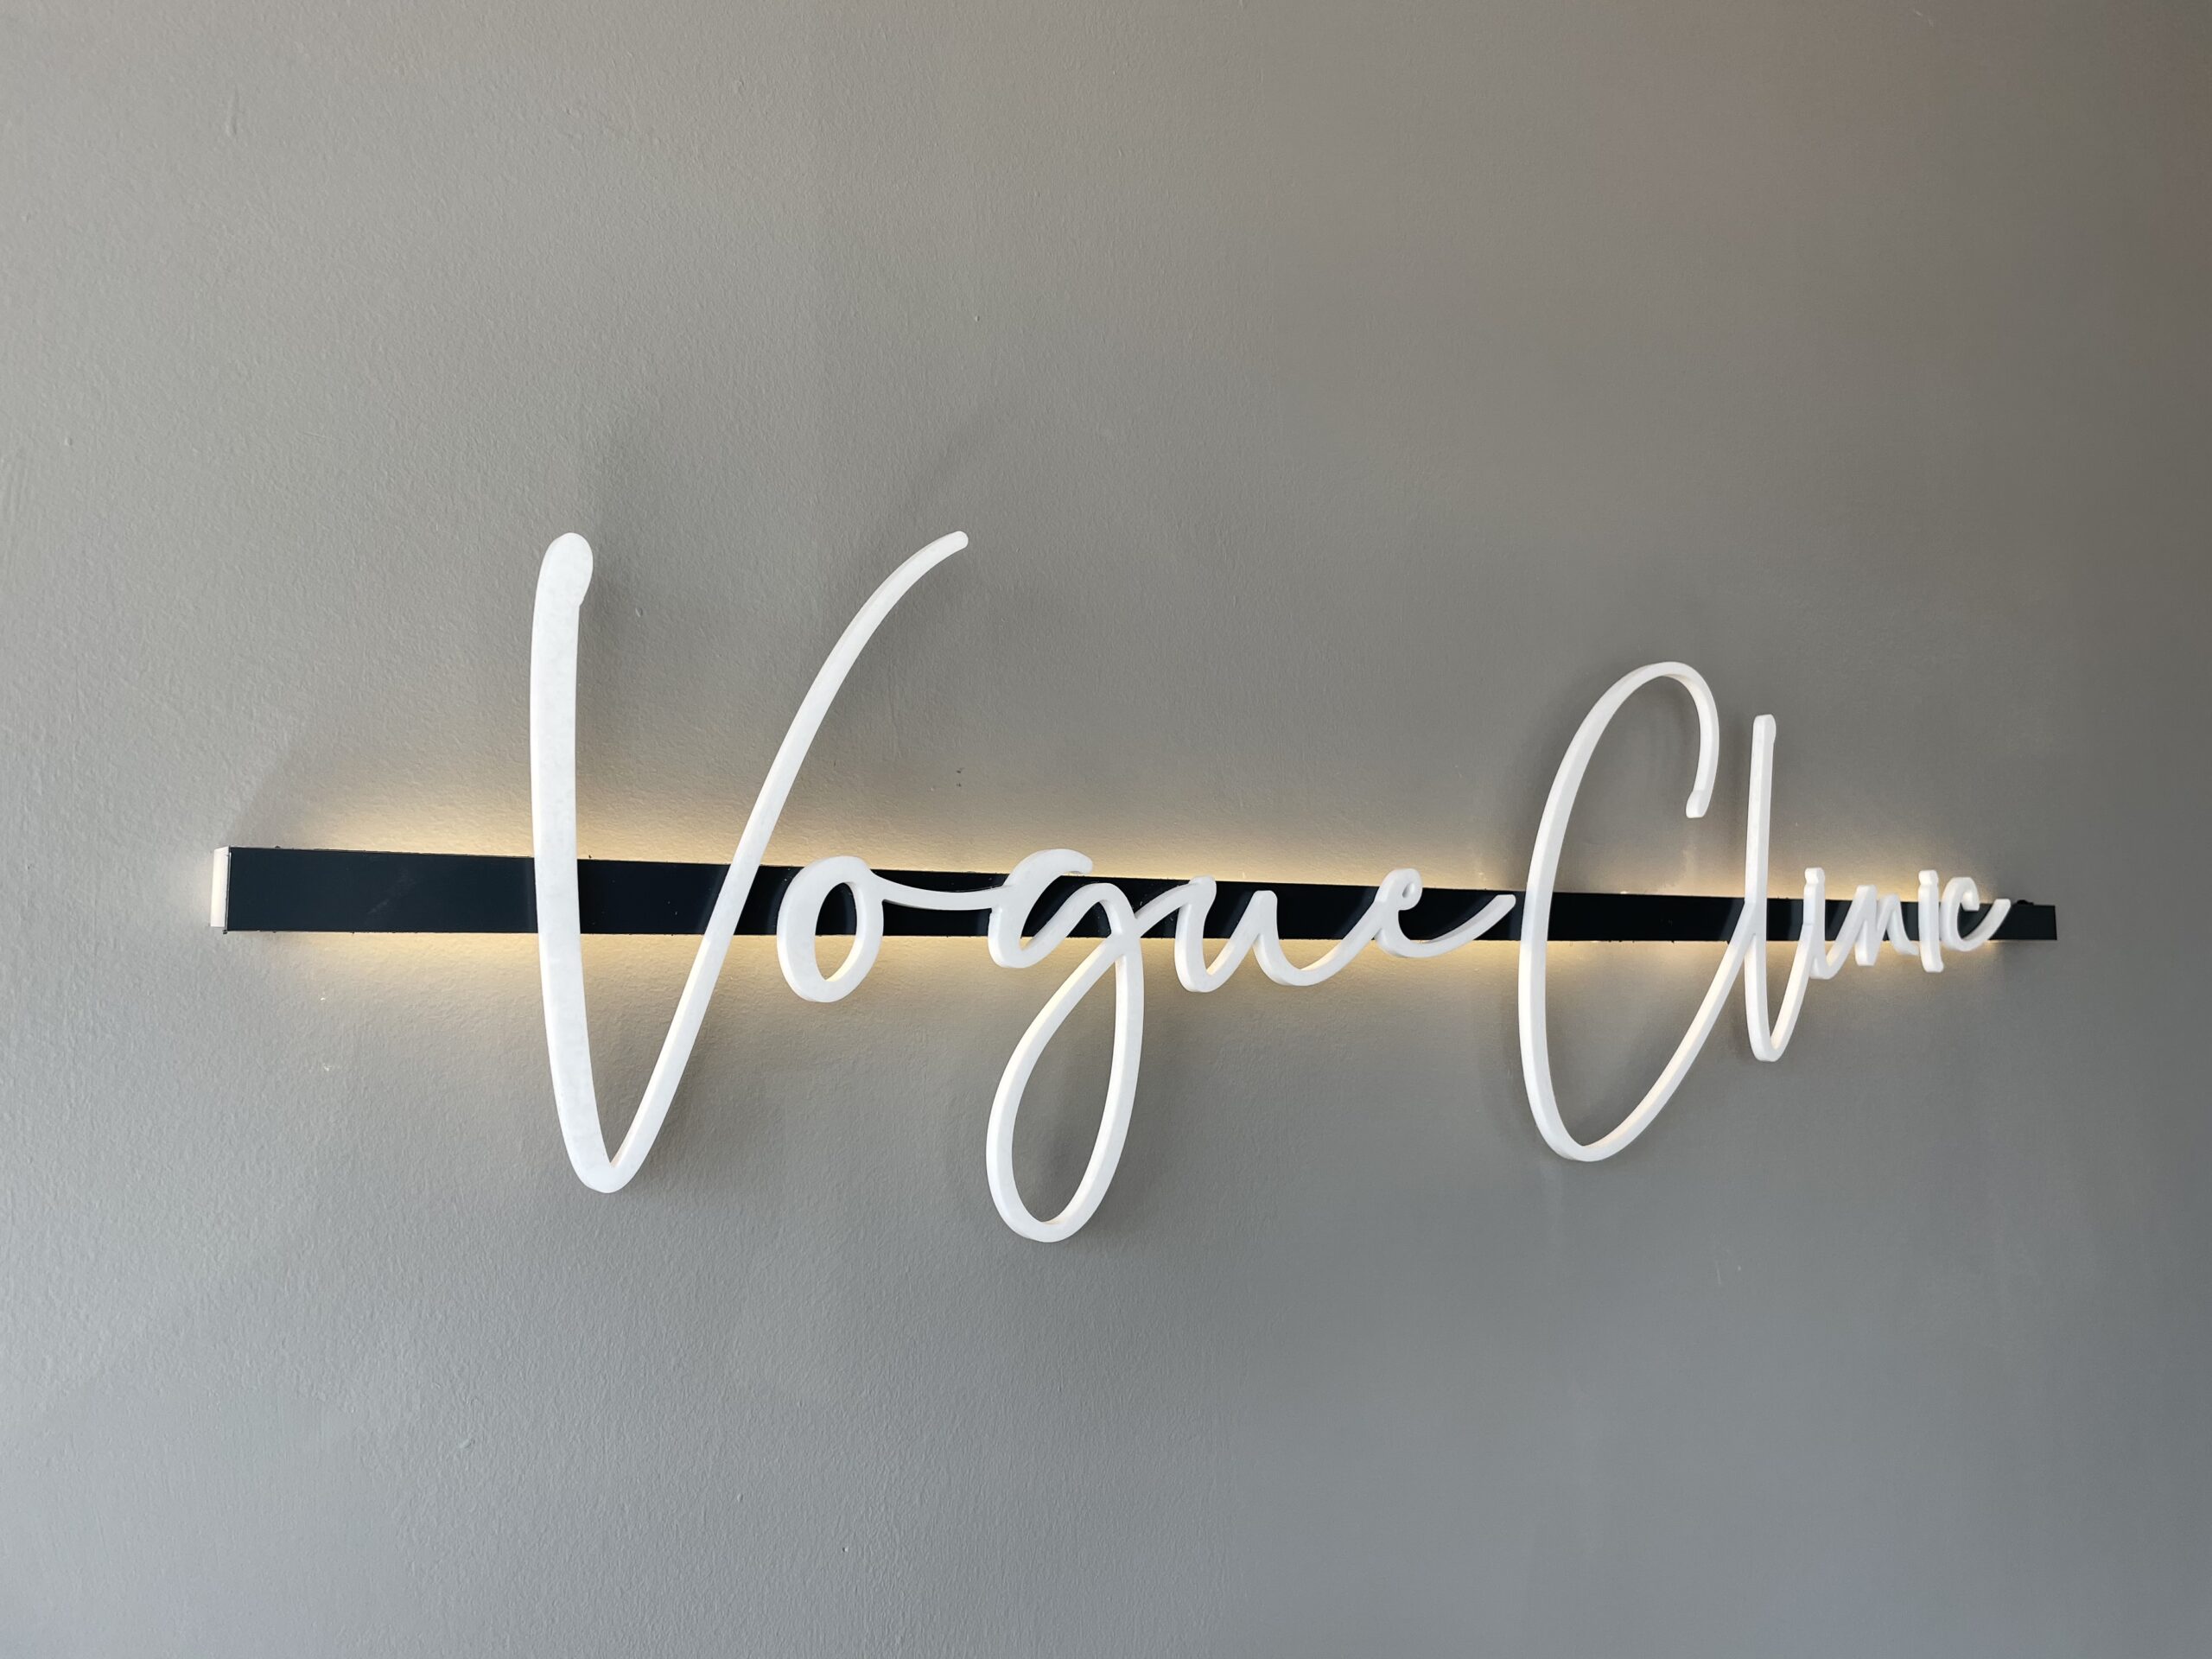 Logotec Interiorismo comercial Vogue